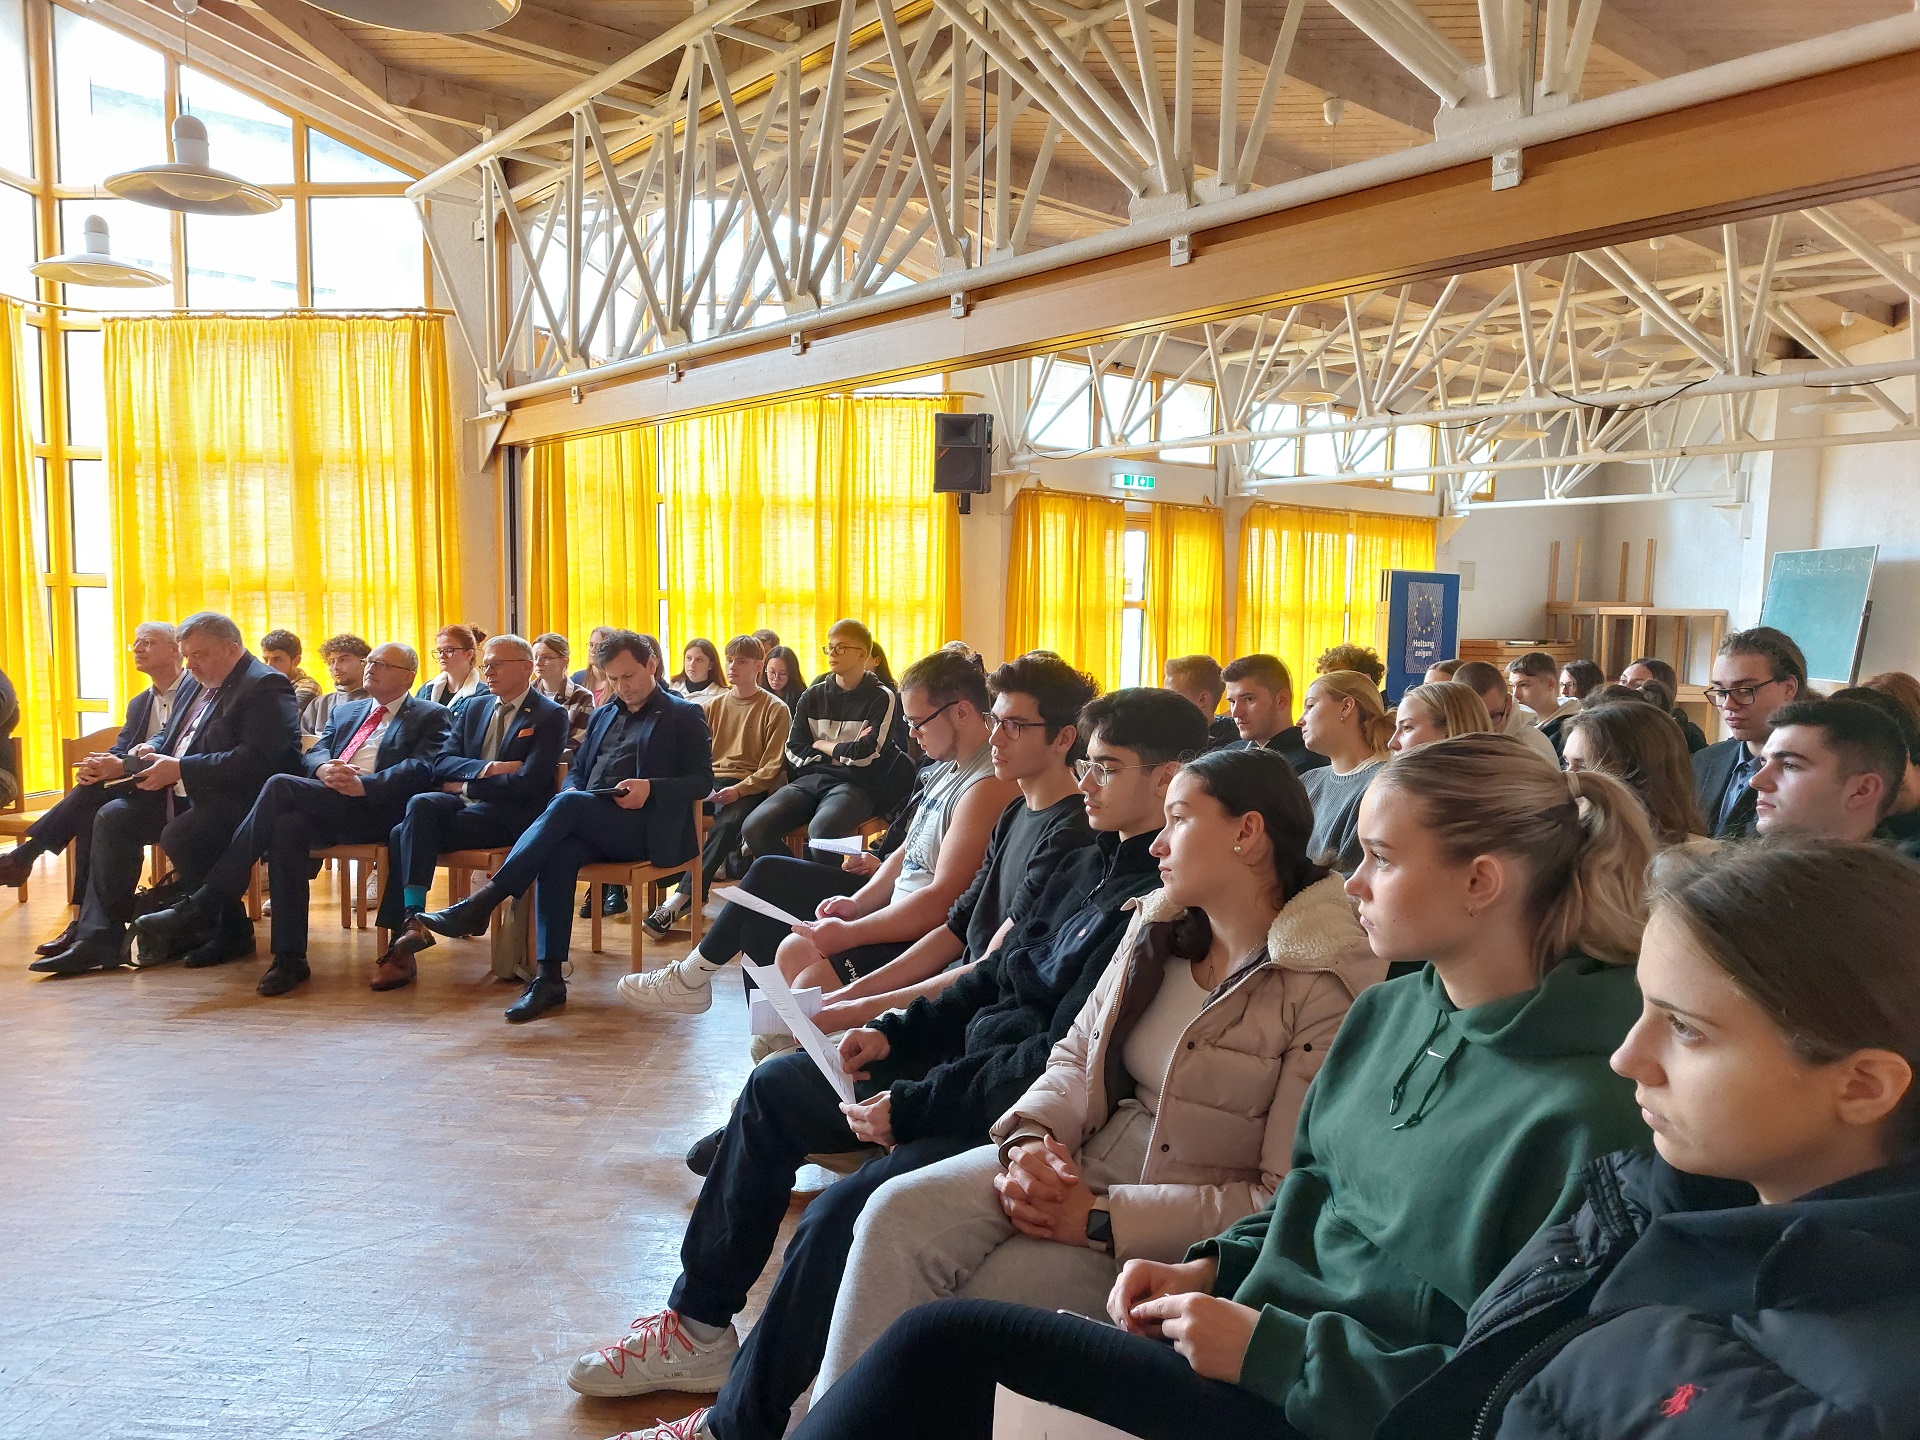 Politik aus erster Hand – litauische und deutsche Parlamentarier stellen sich den Fragen der Schüler*innen (Foto: Dr. G. Hoffmann)